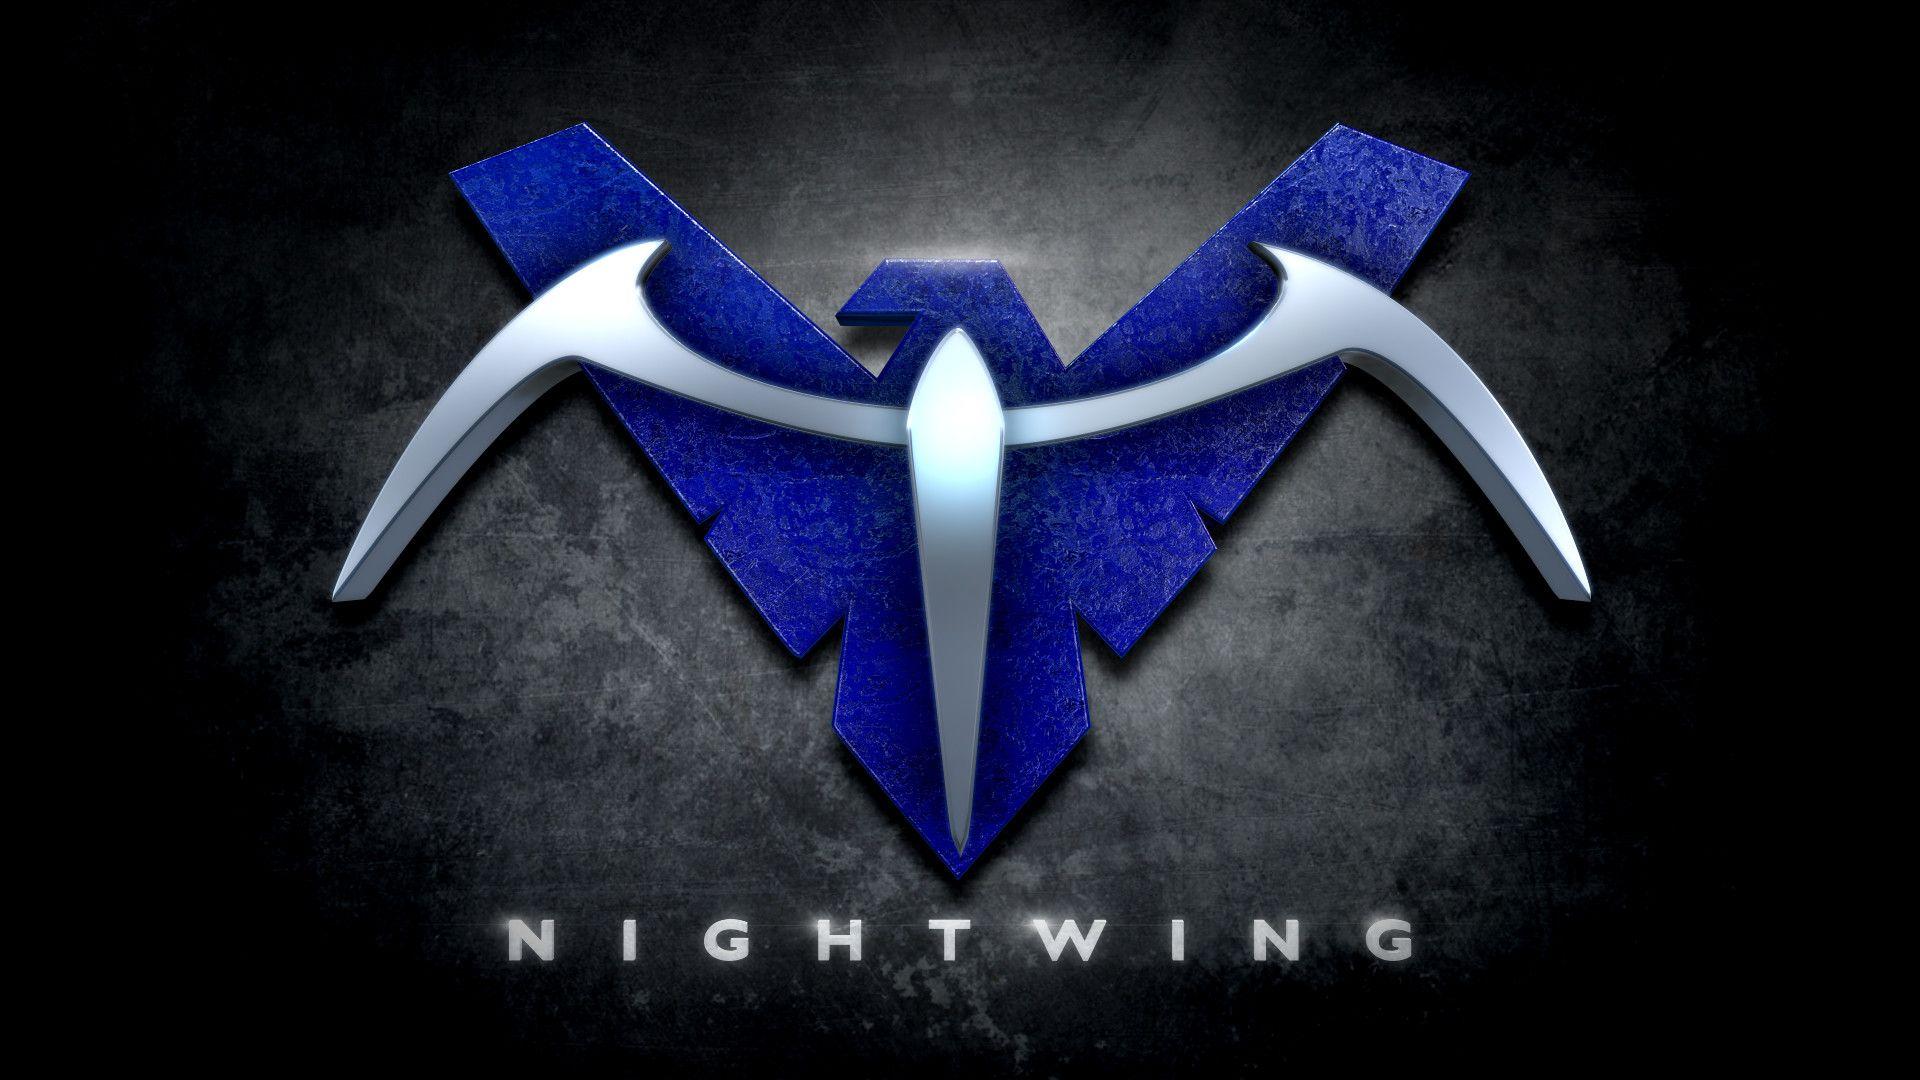 Nightwing Logo - 73+ Nightwing Logo Wallpapers on WallpaperPlay